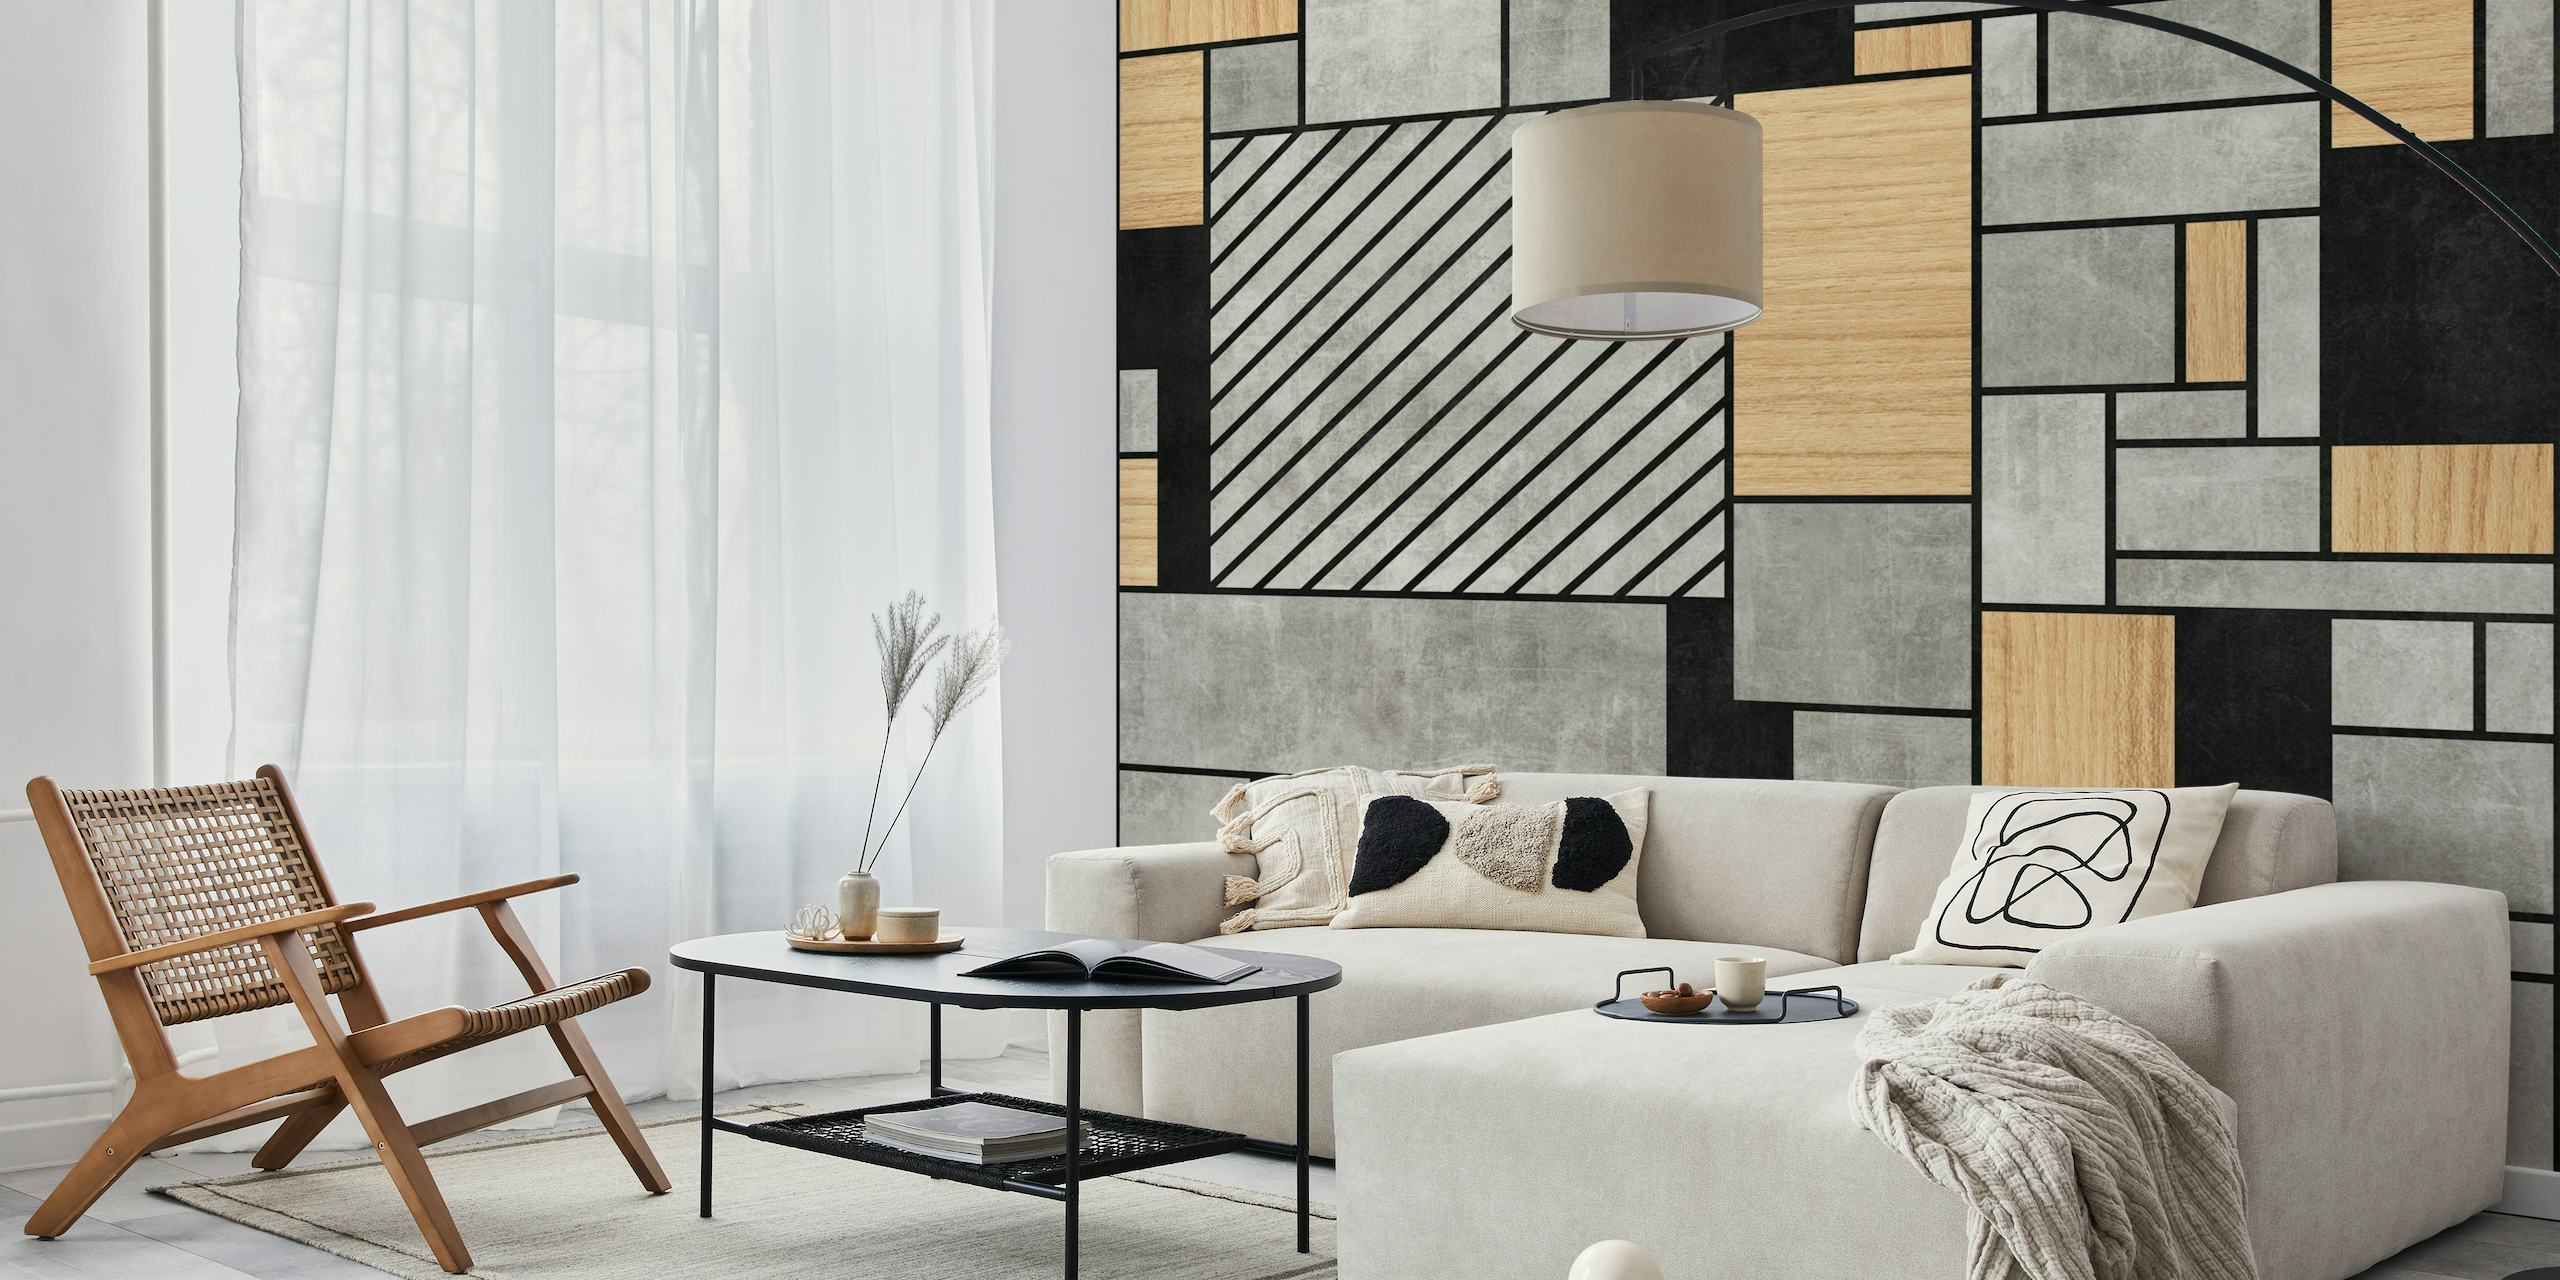 Fotomural vinílico abstrato de padrão aleatório com texturas de concreto e madeira para interiores modernos